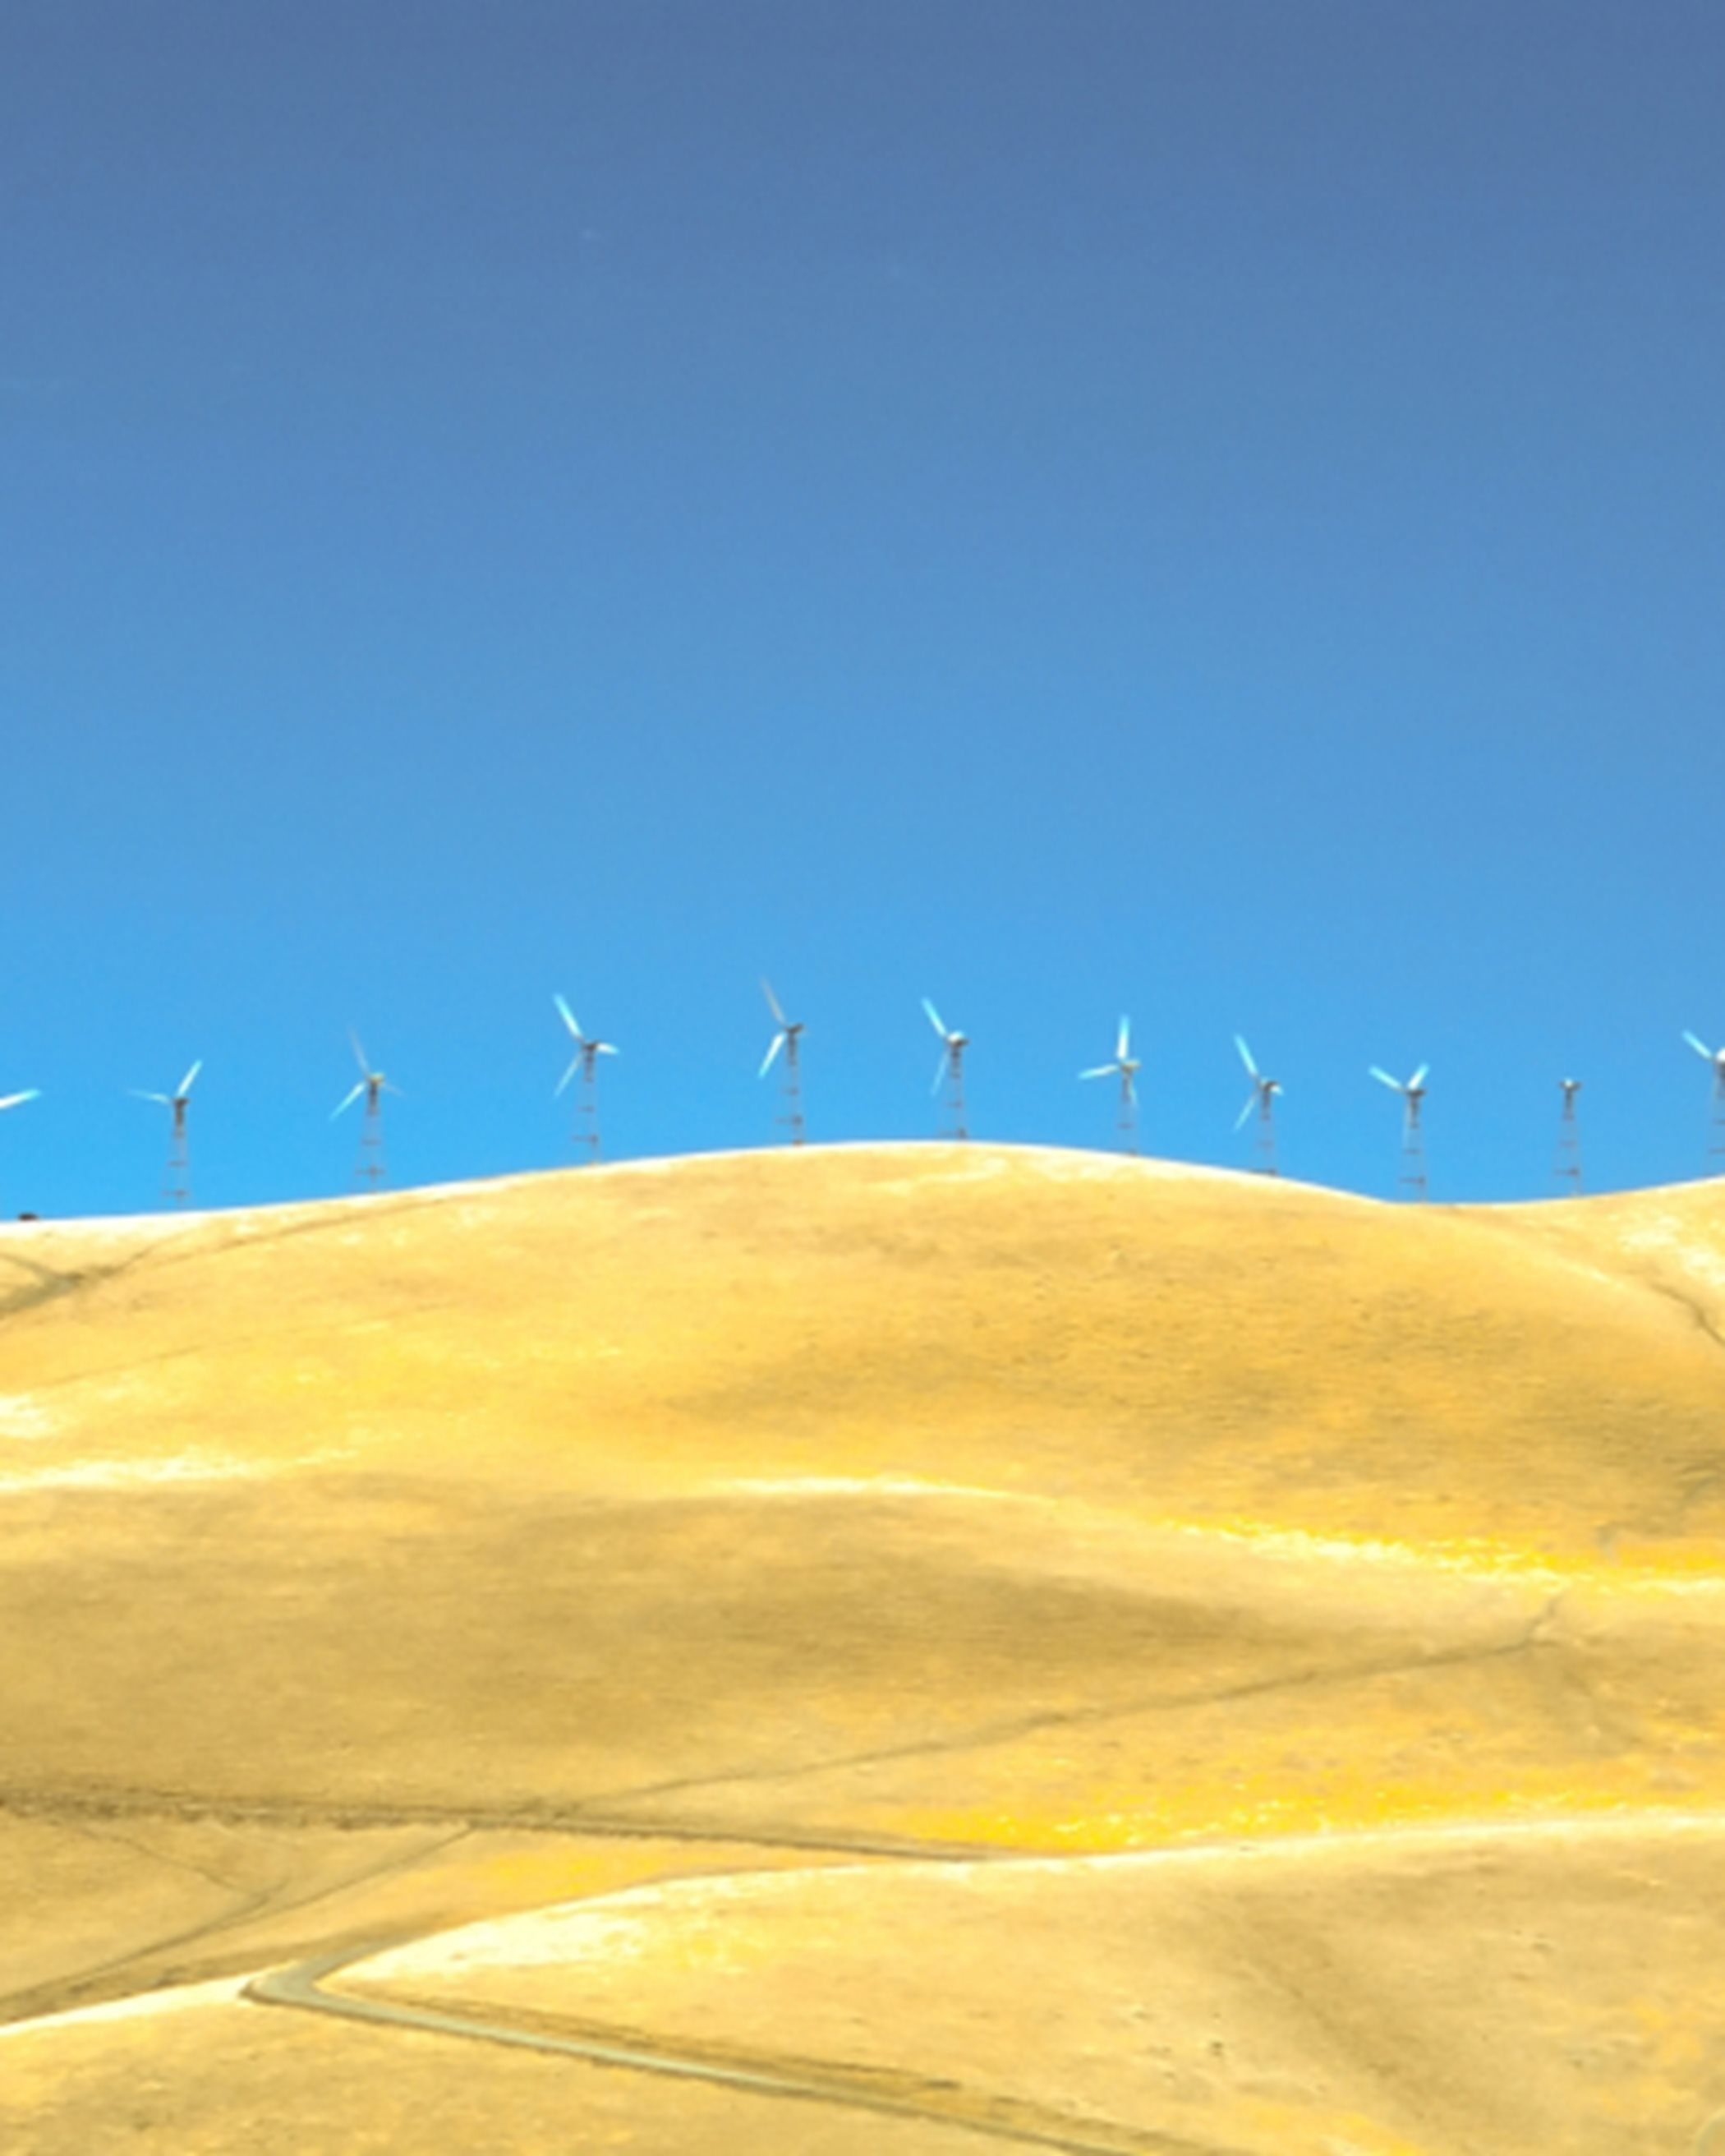 Wind Farm 